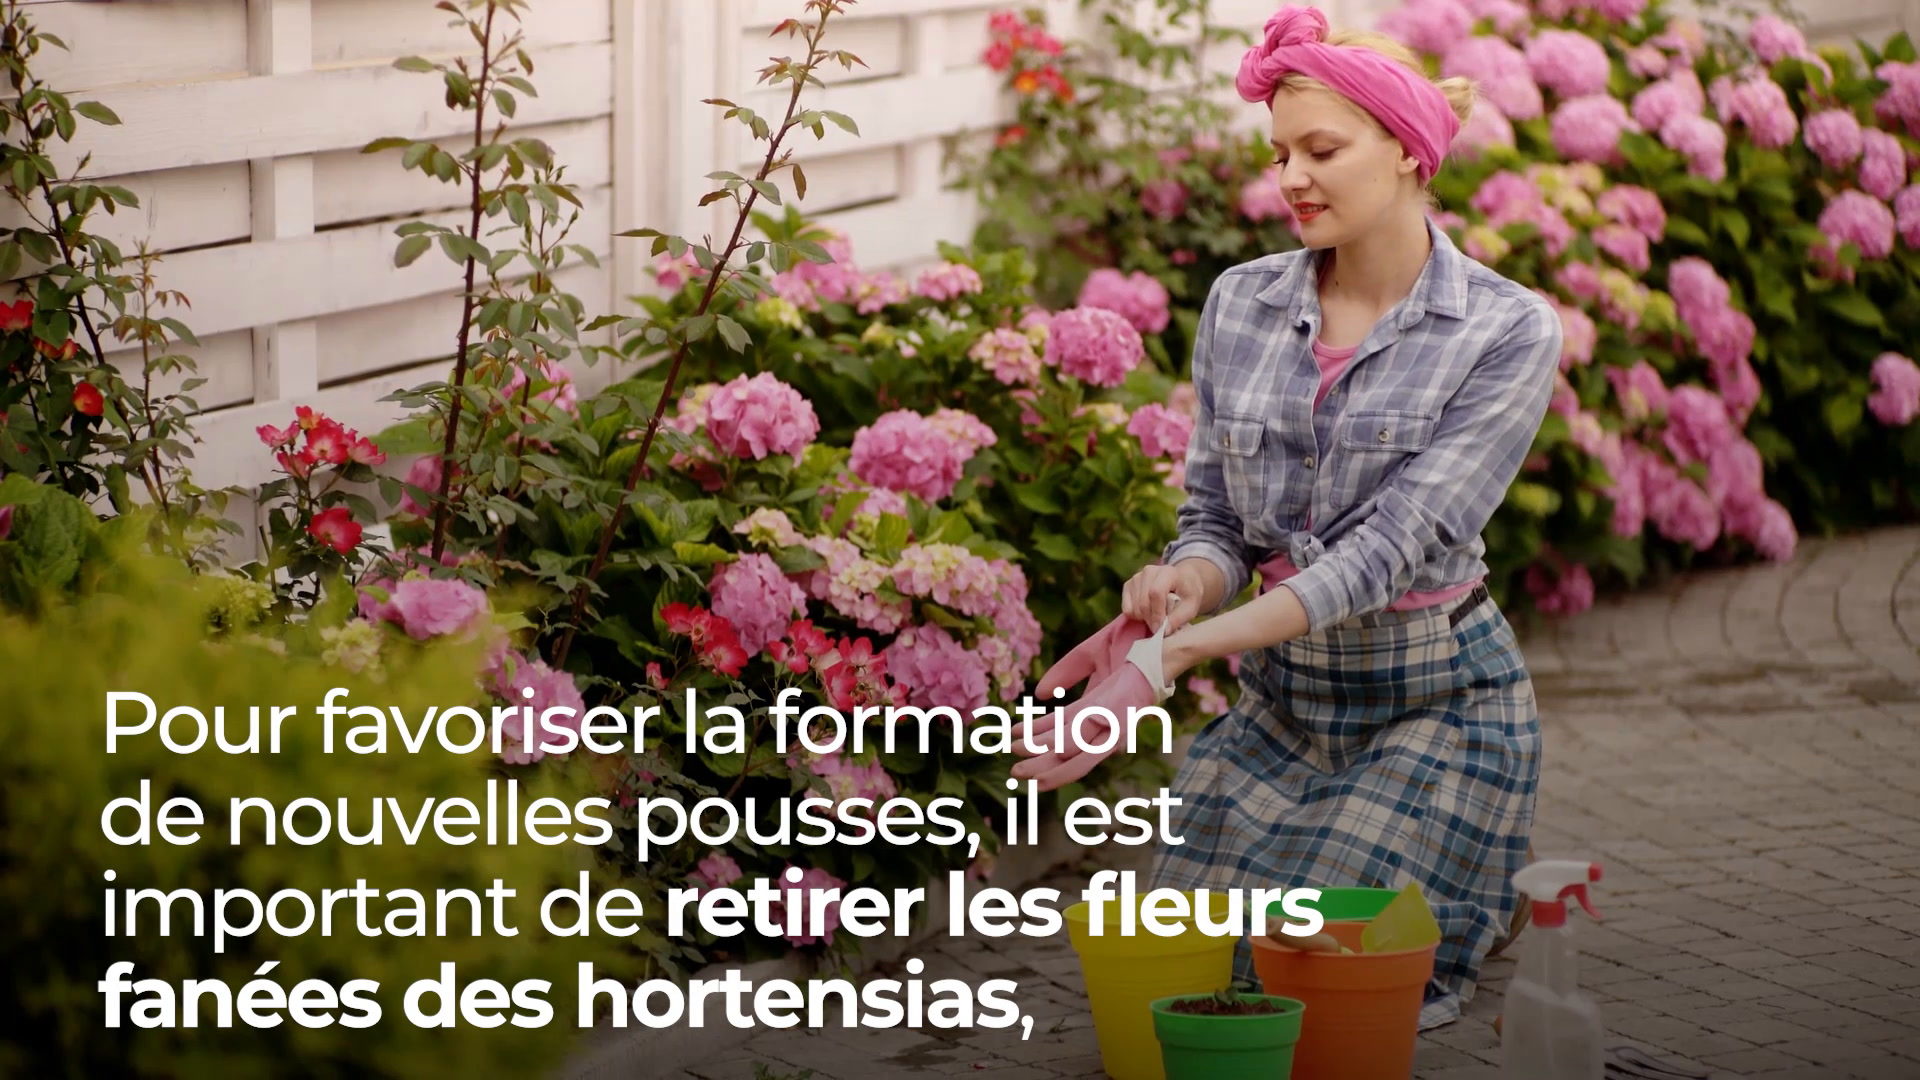 Faut-il couper les fleurs fanées des hortensias en été ? - Le Parisien